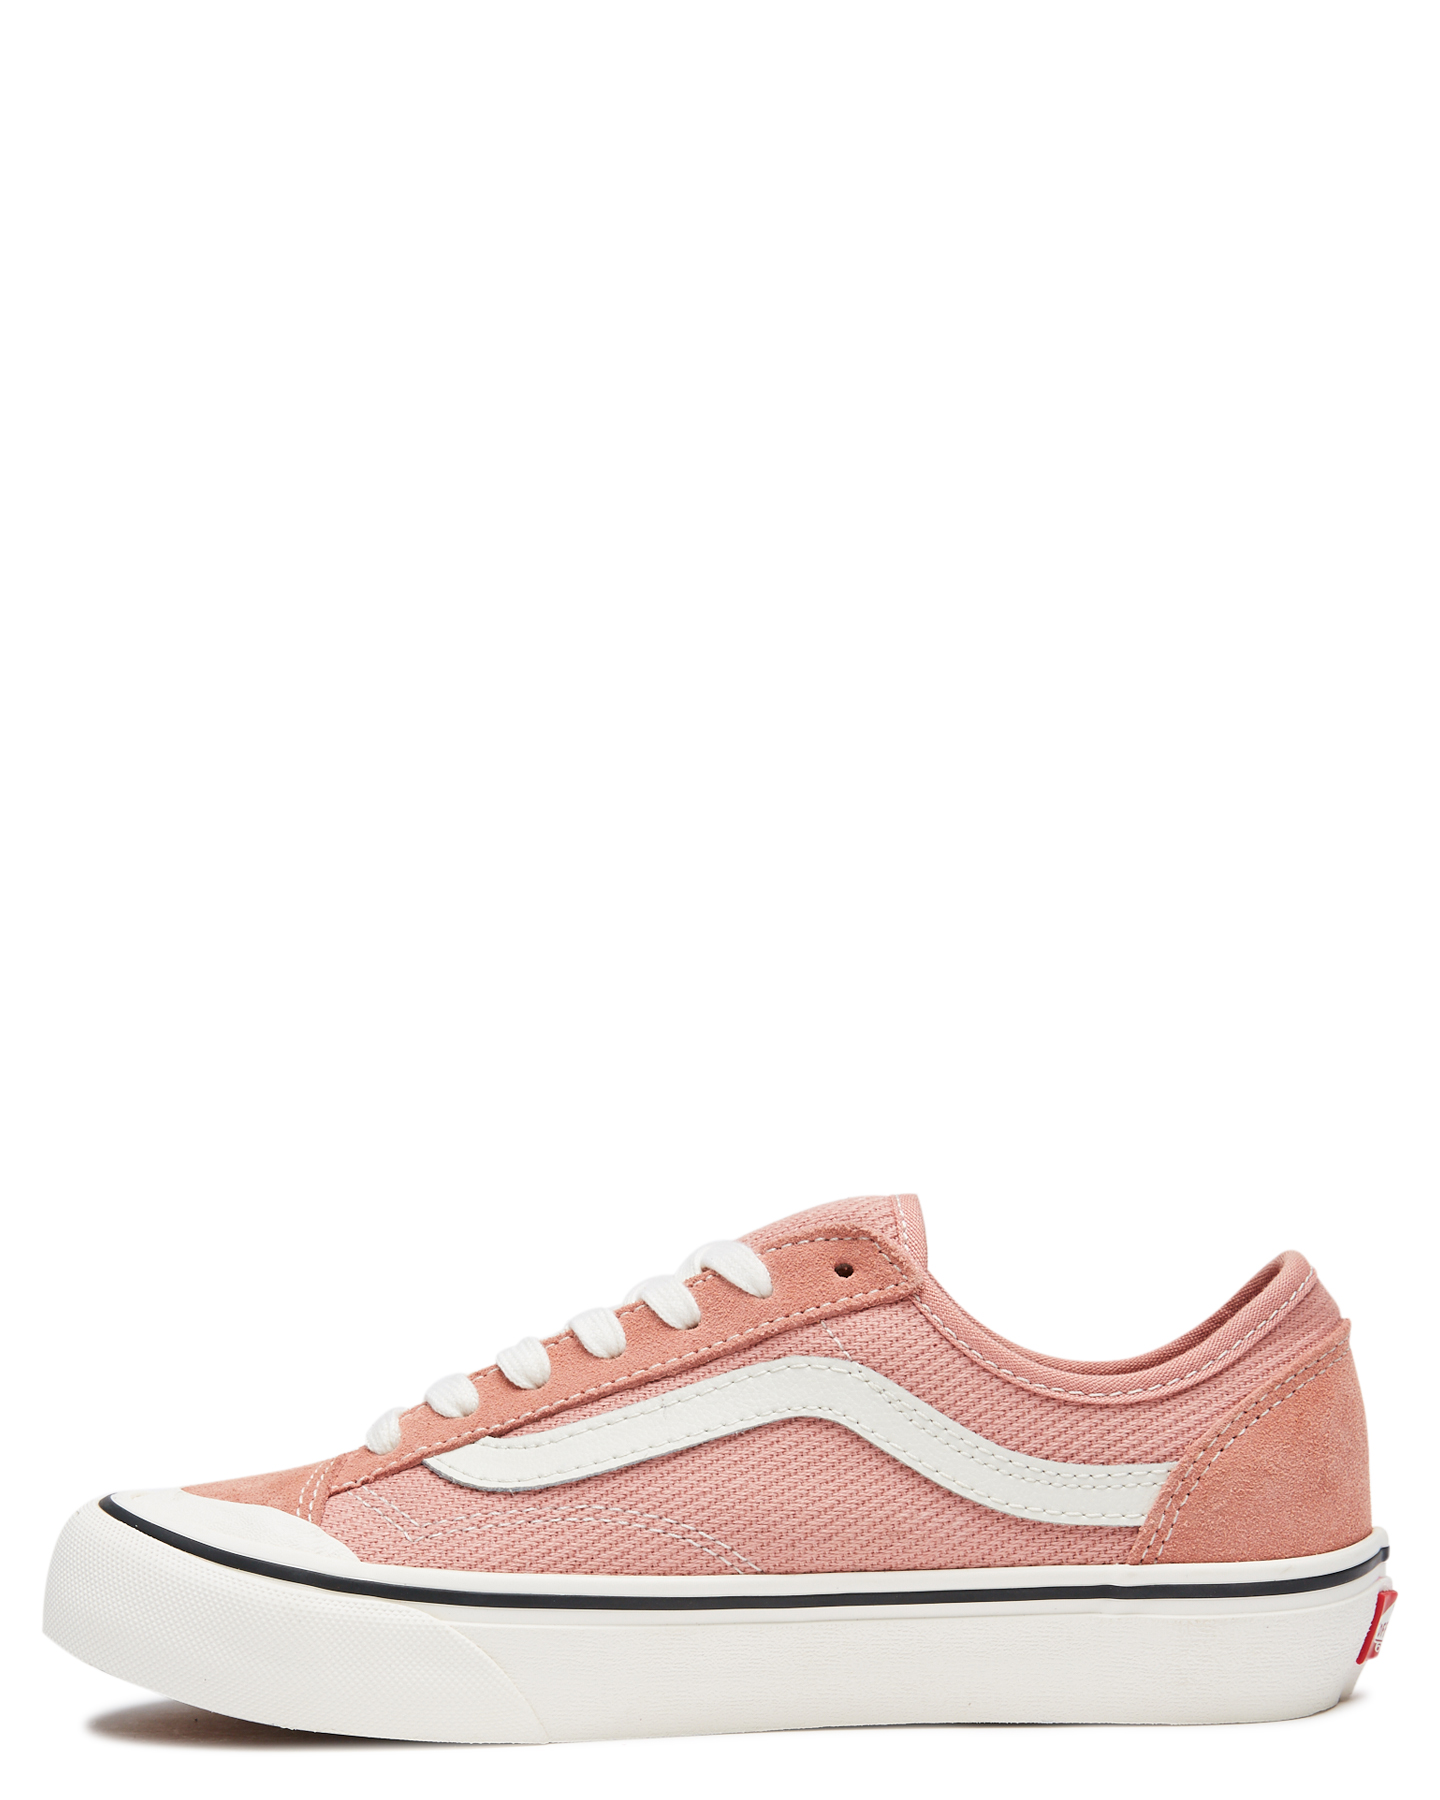 Vans Womens Style 36 Decon - Pink | SurfStitch